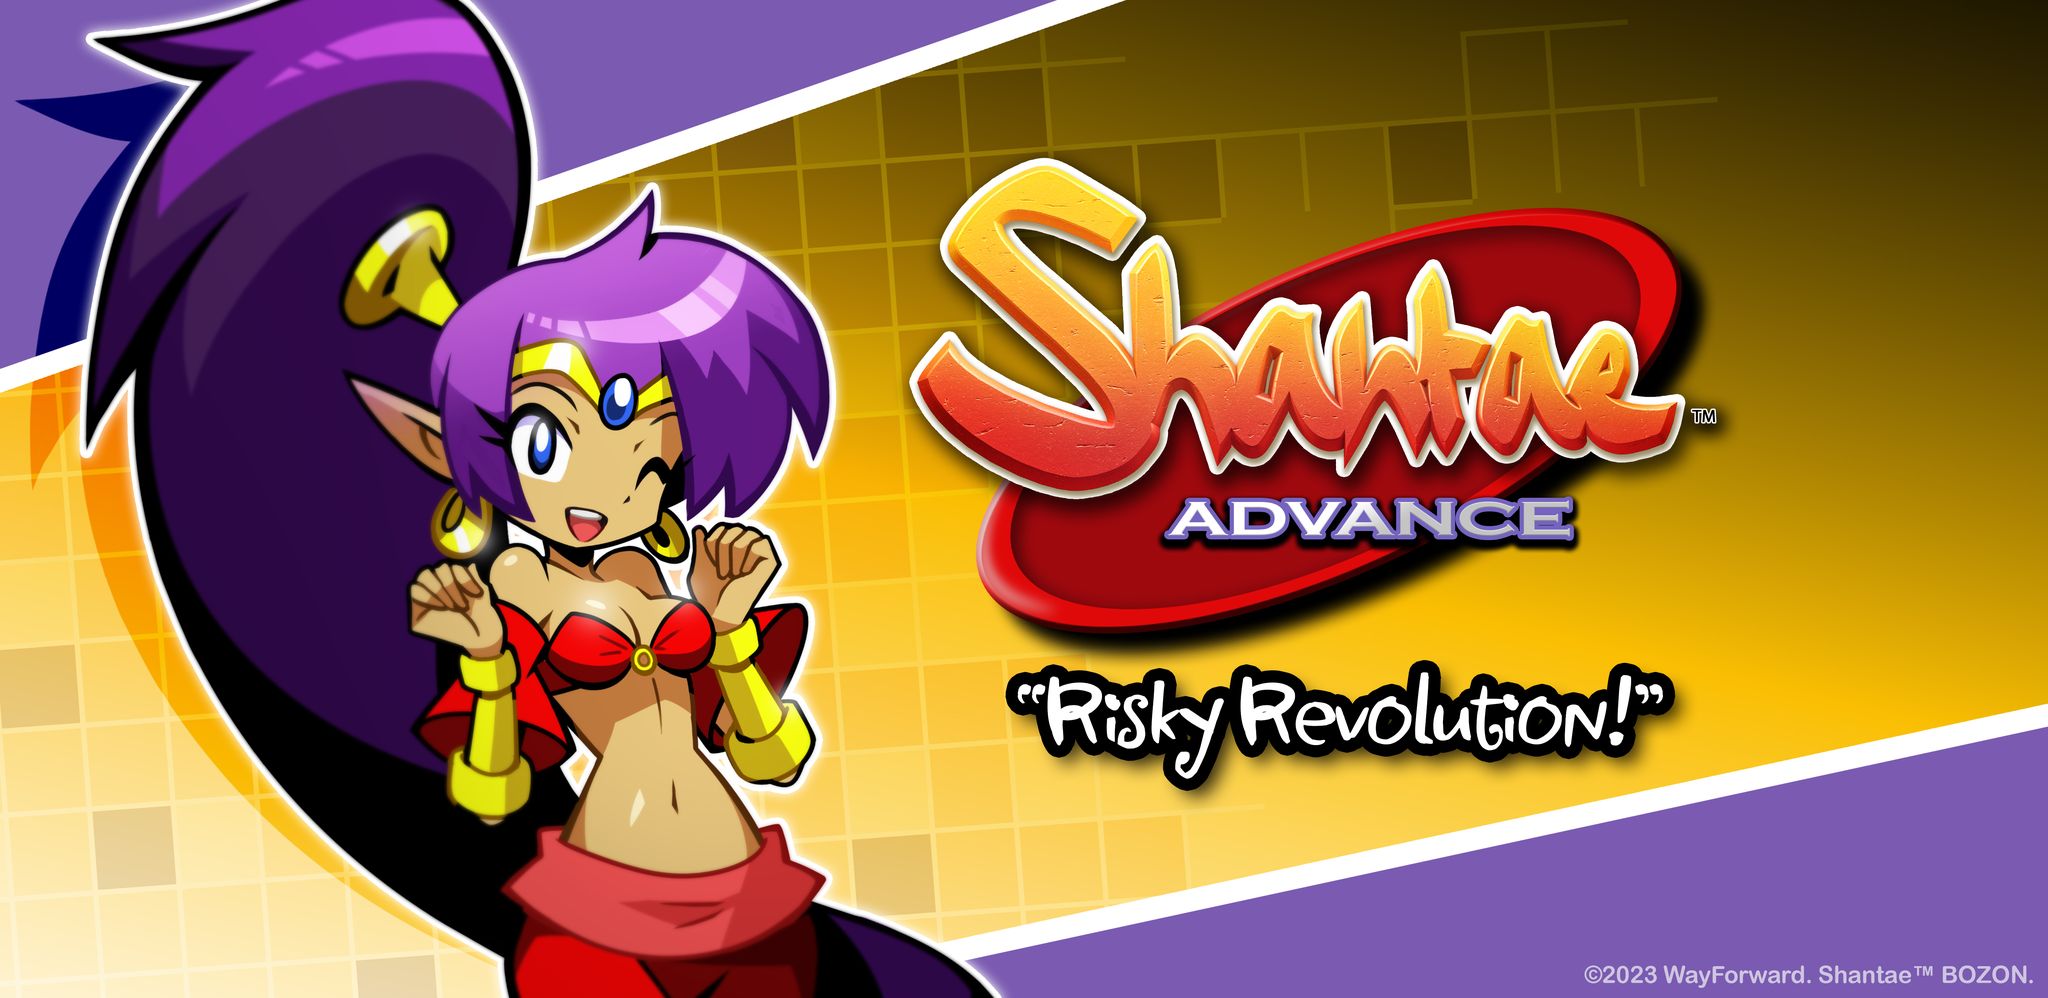 Shantae Advance: Risky Revolution s’estrenarà 20 anys després